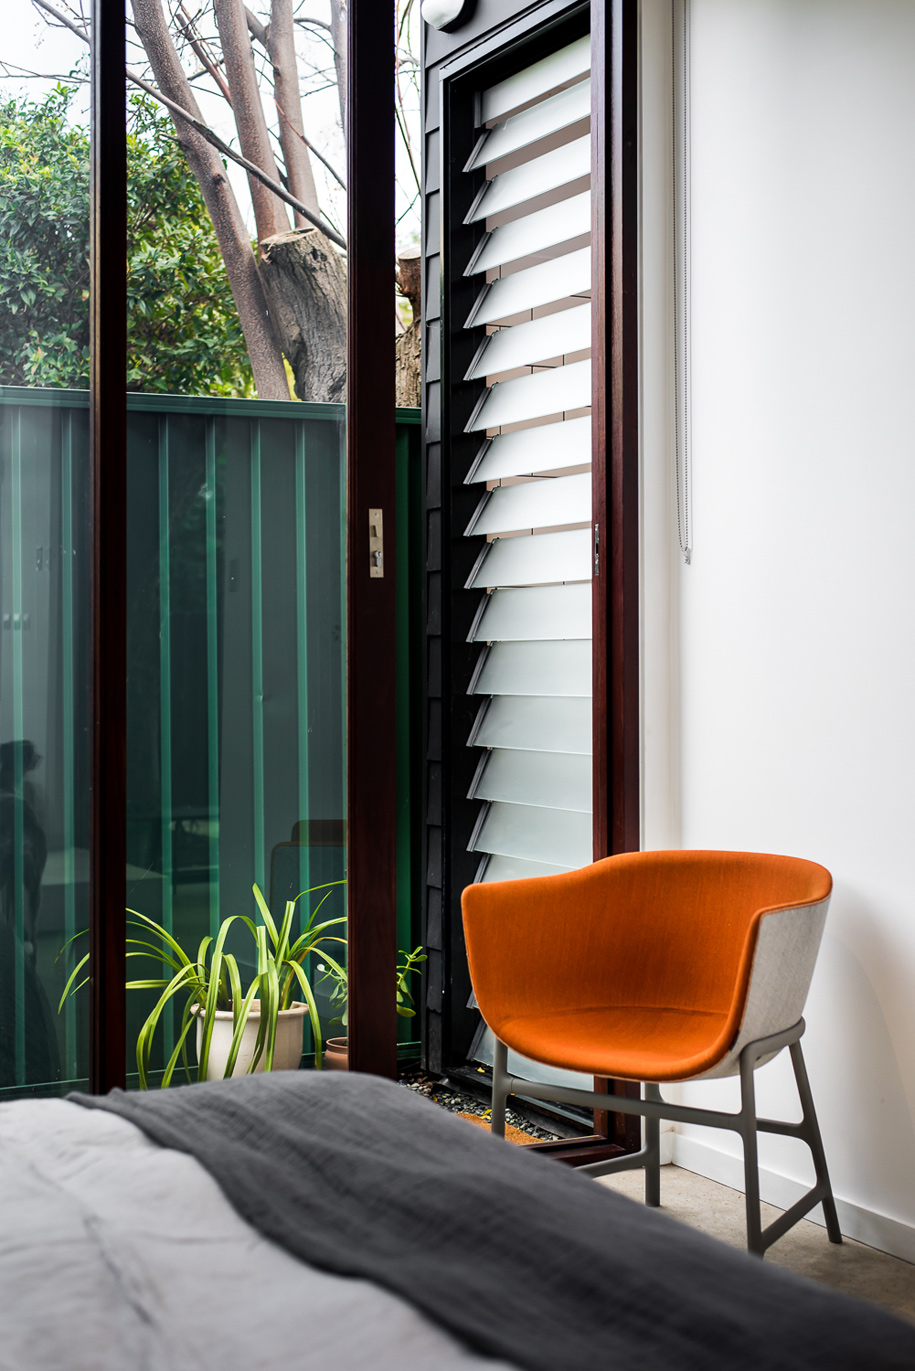 Удобное оранжевое кресло в спальне рядом со сдвижной стеклянной дверью в сад.